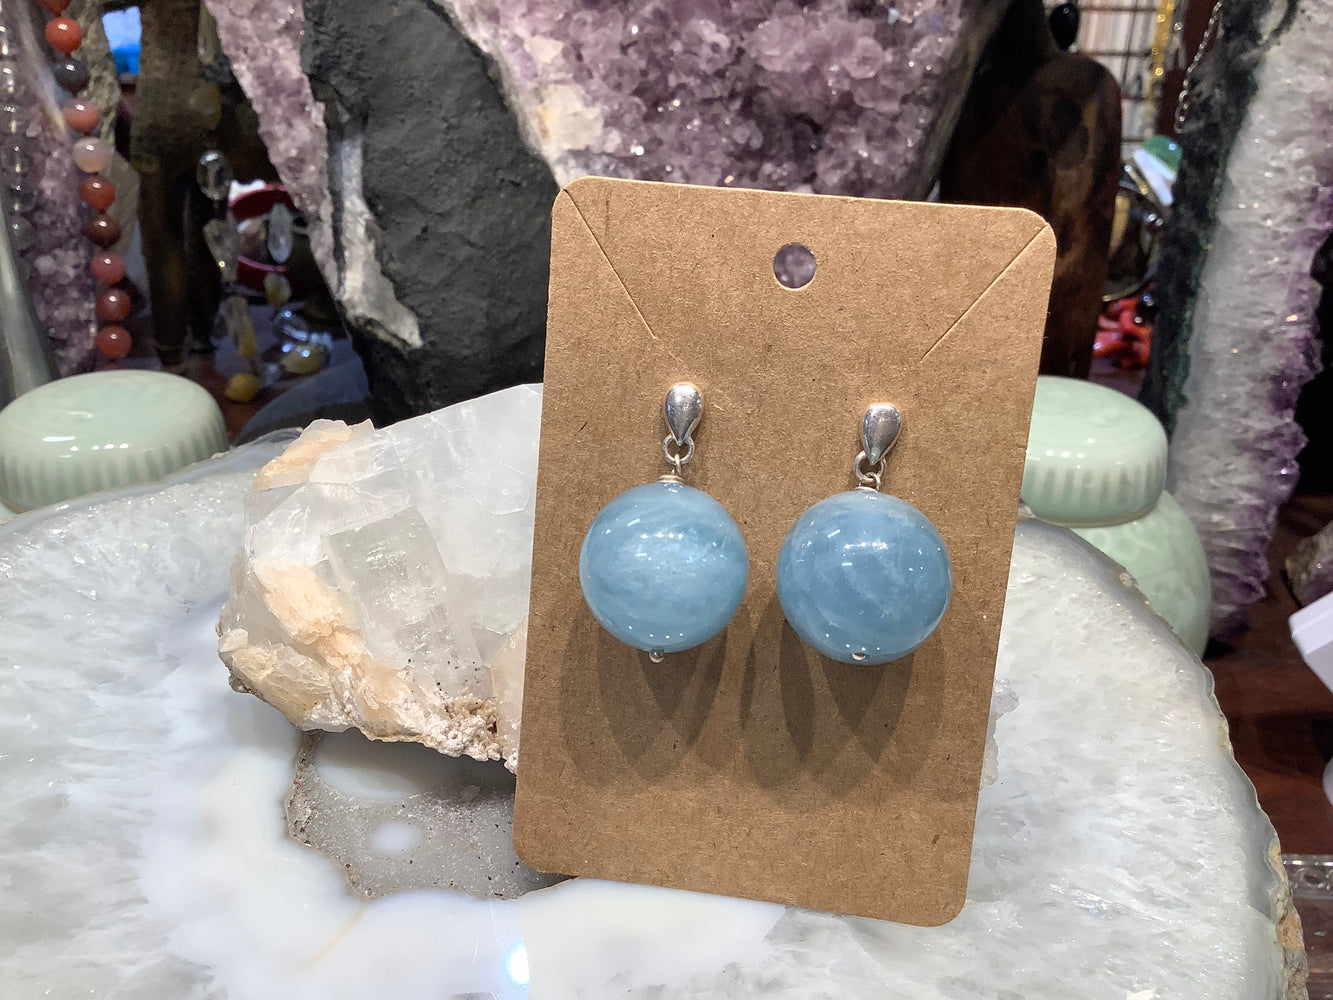 Gorgeous aquamarine 20mm chatoyance gemstone earrings